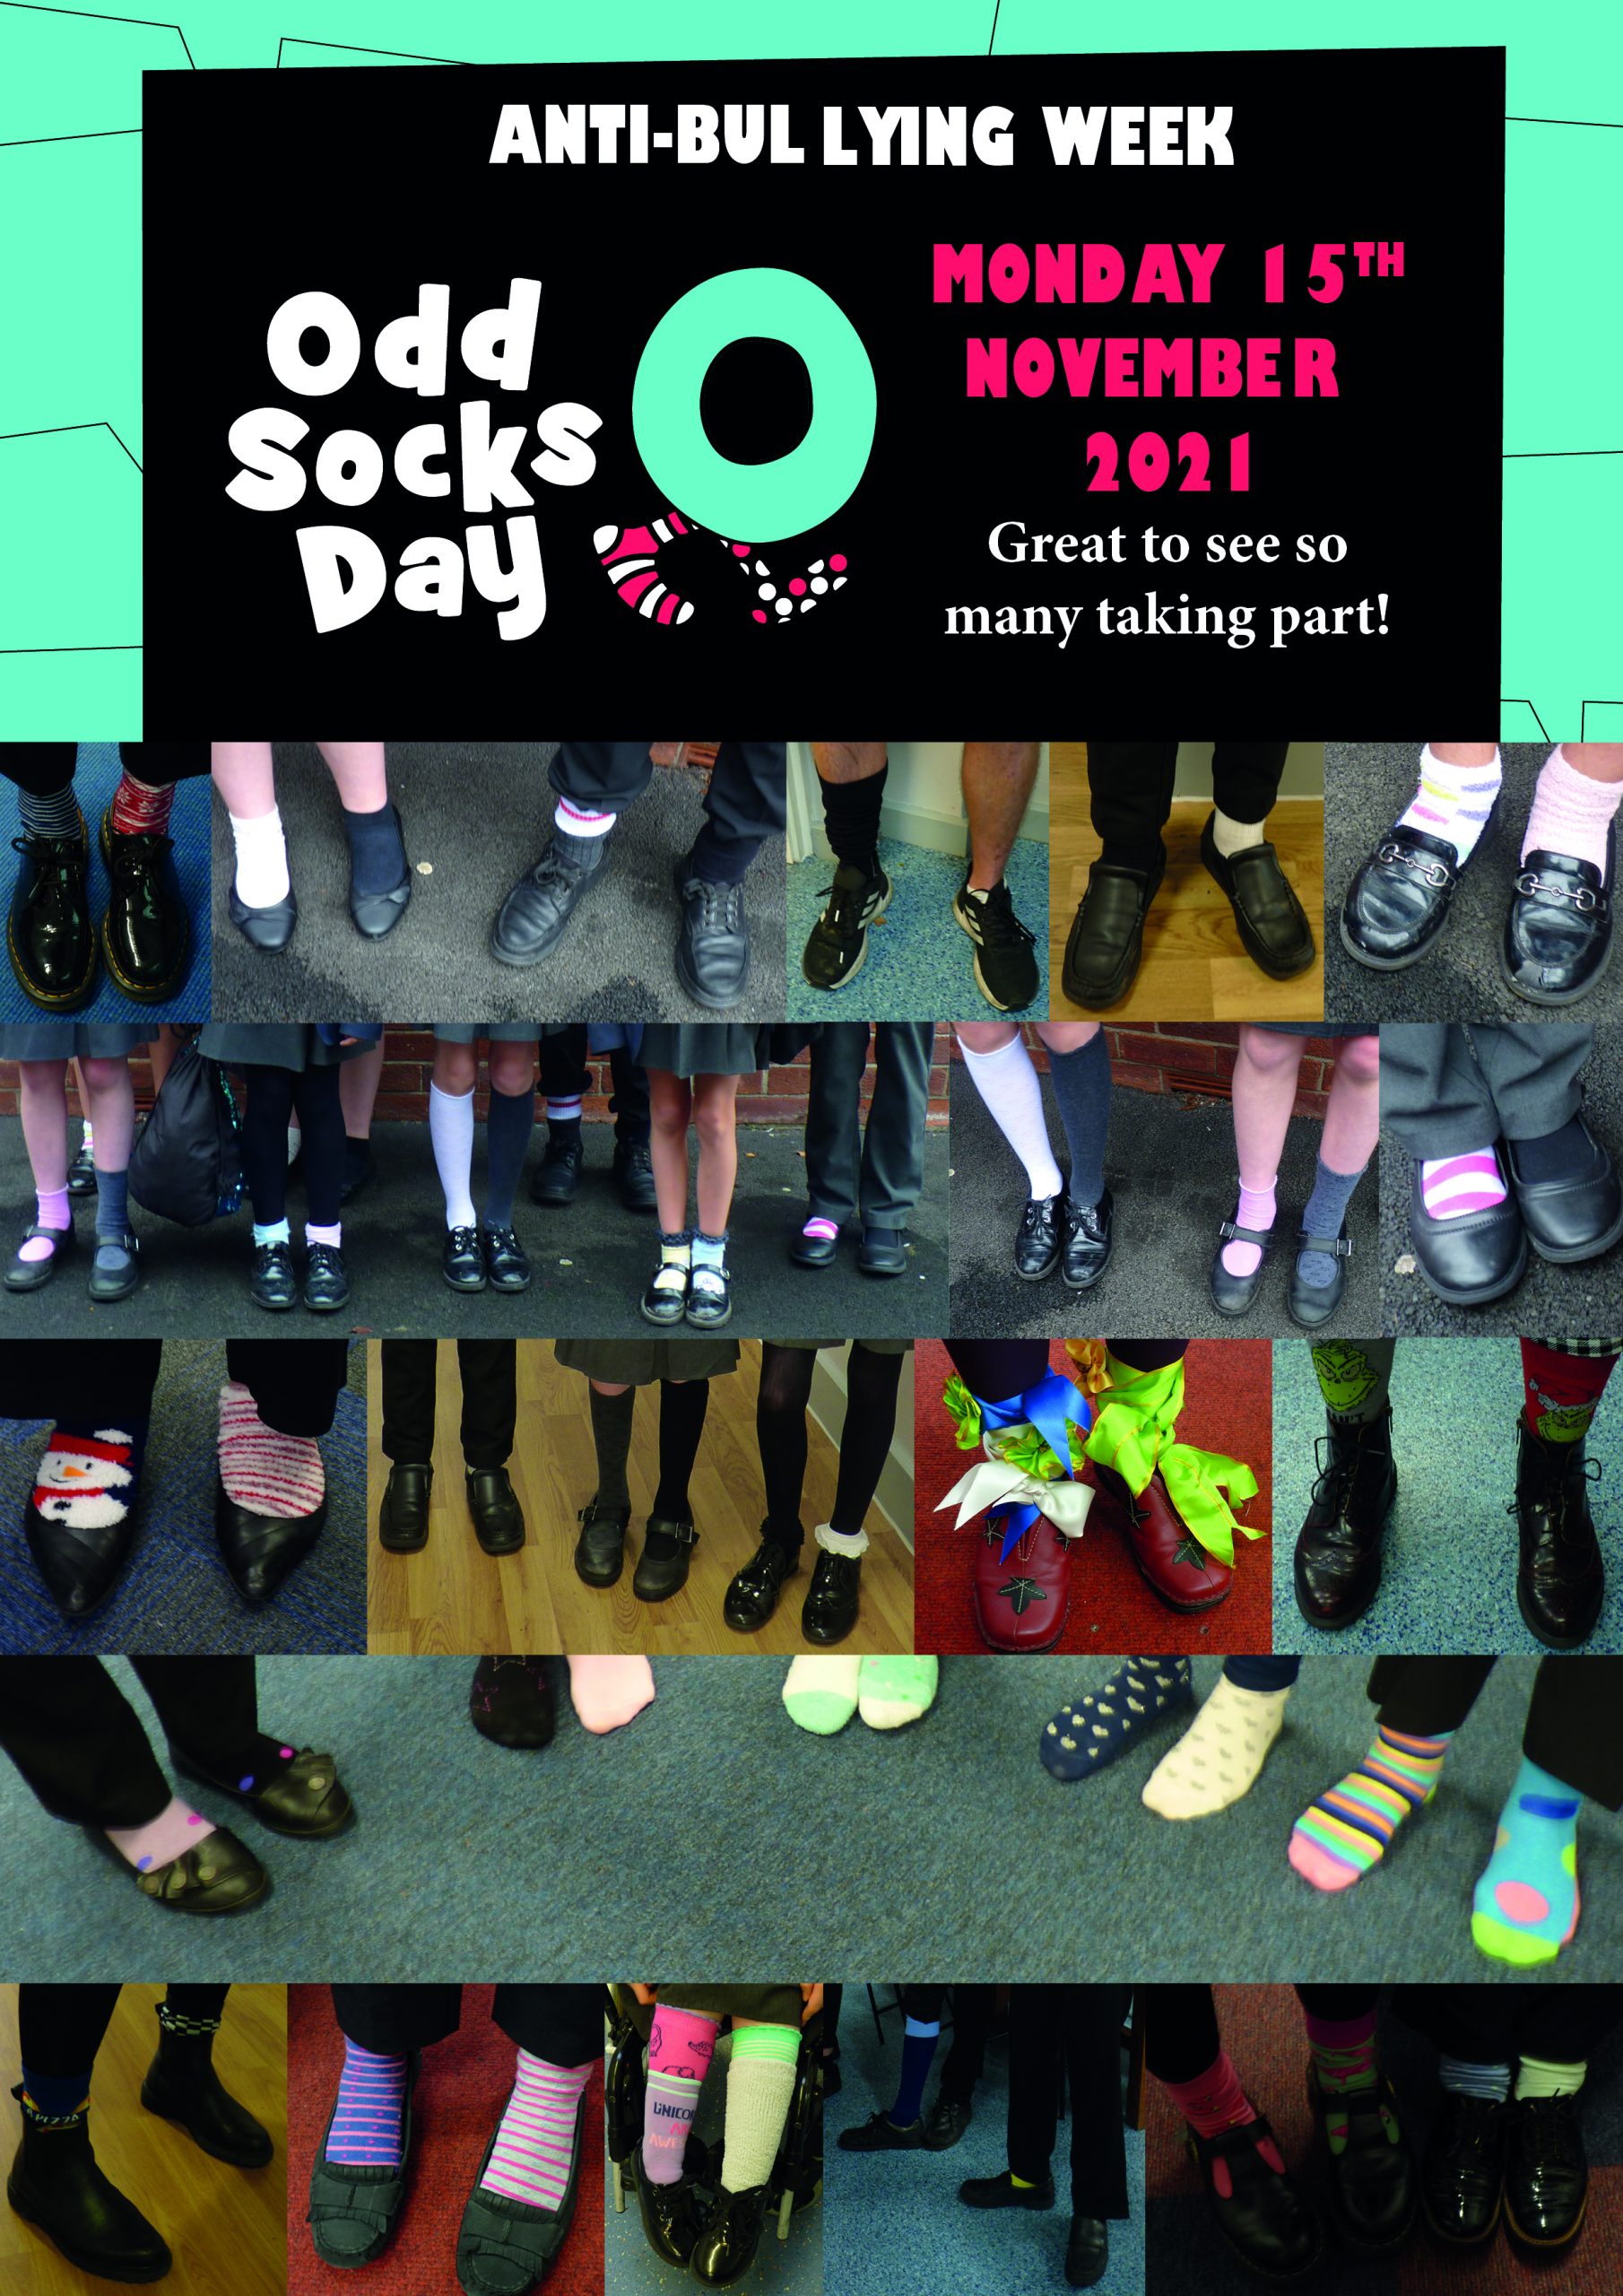 Odd Socks day